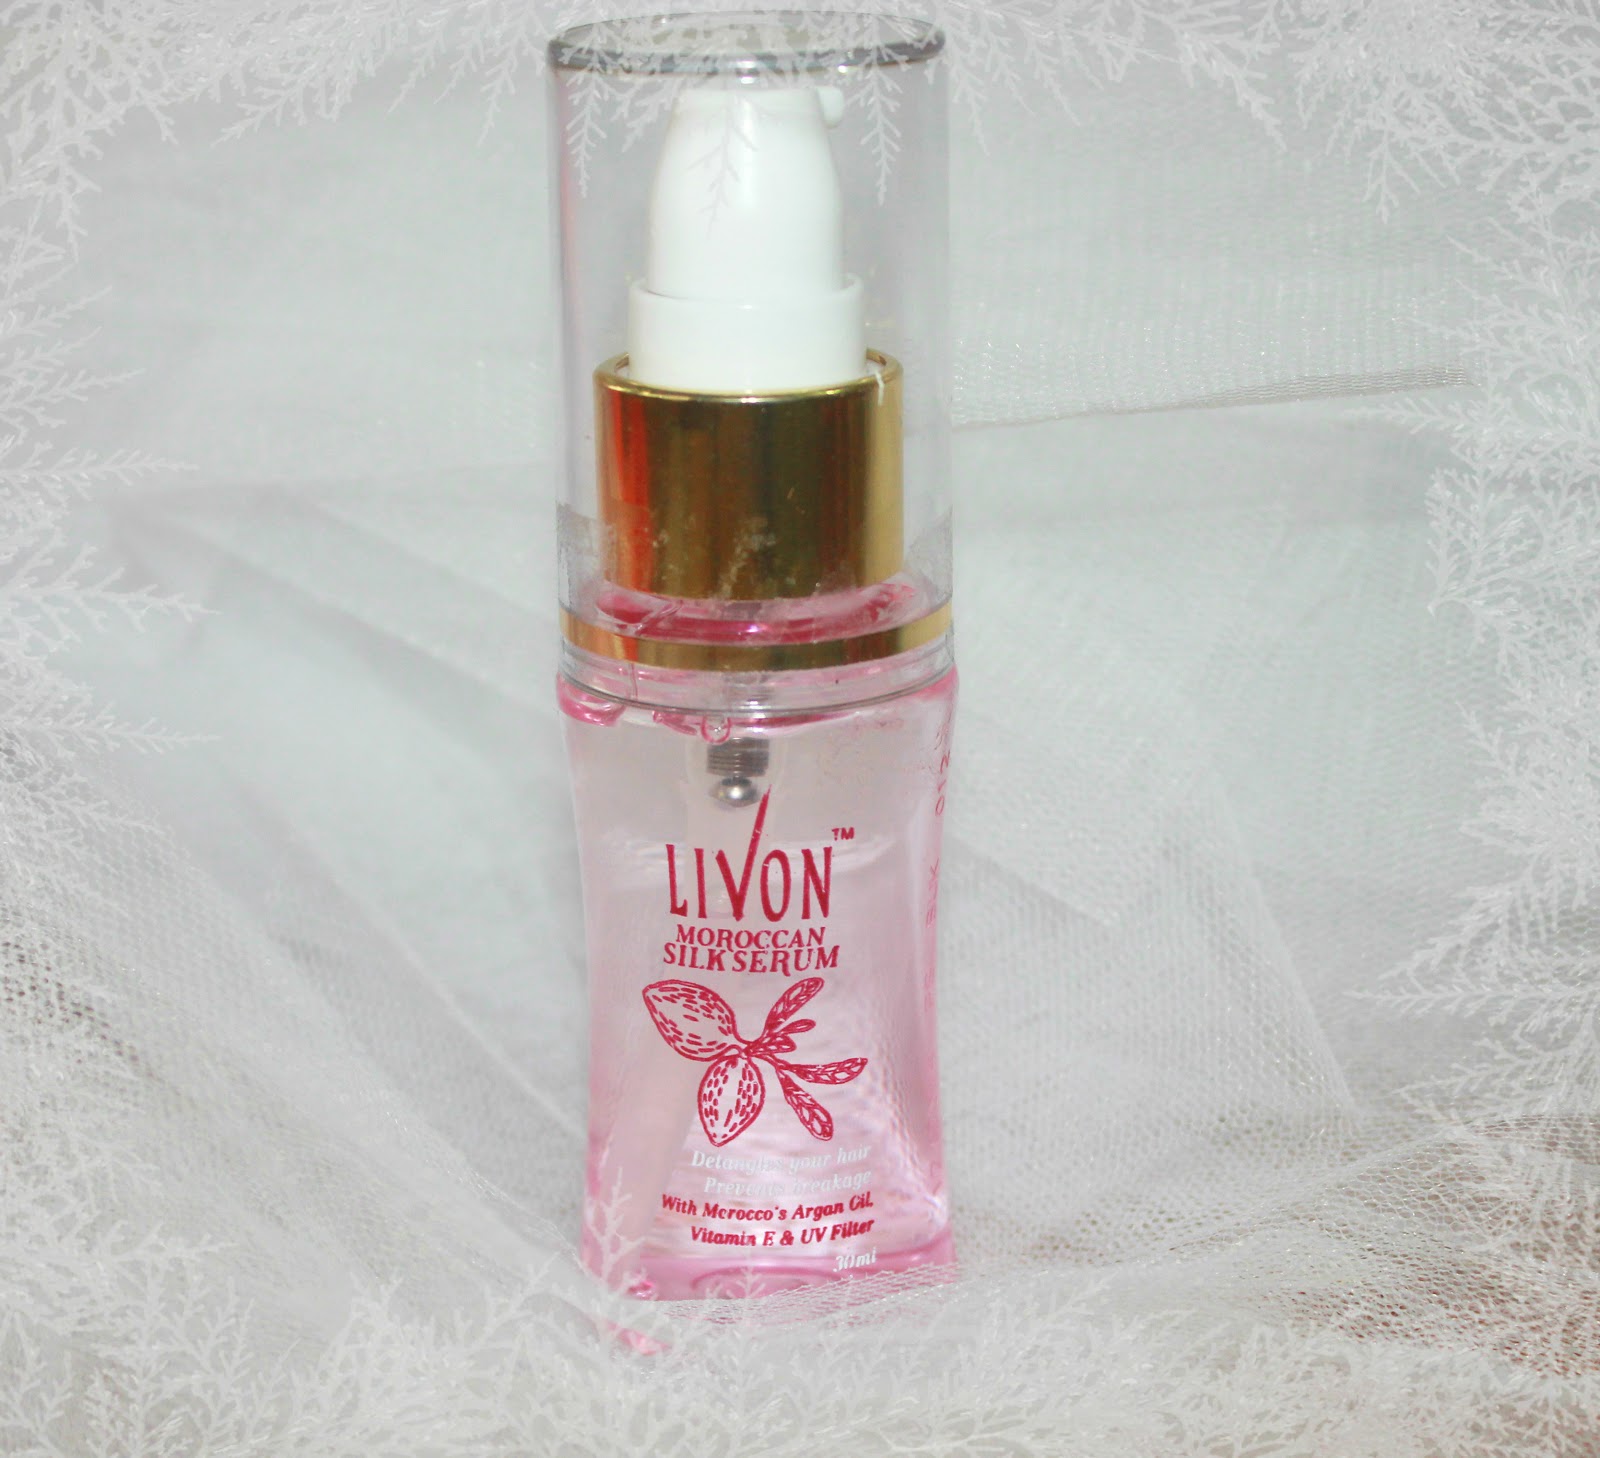 Makeup Review & Beauty Blog : Livon Moroccan Silk Serum Review